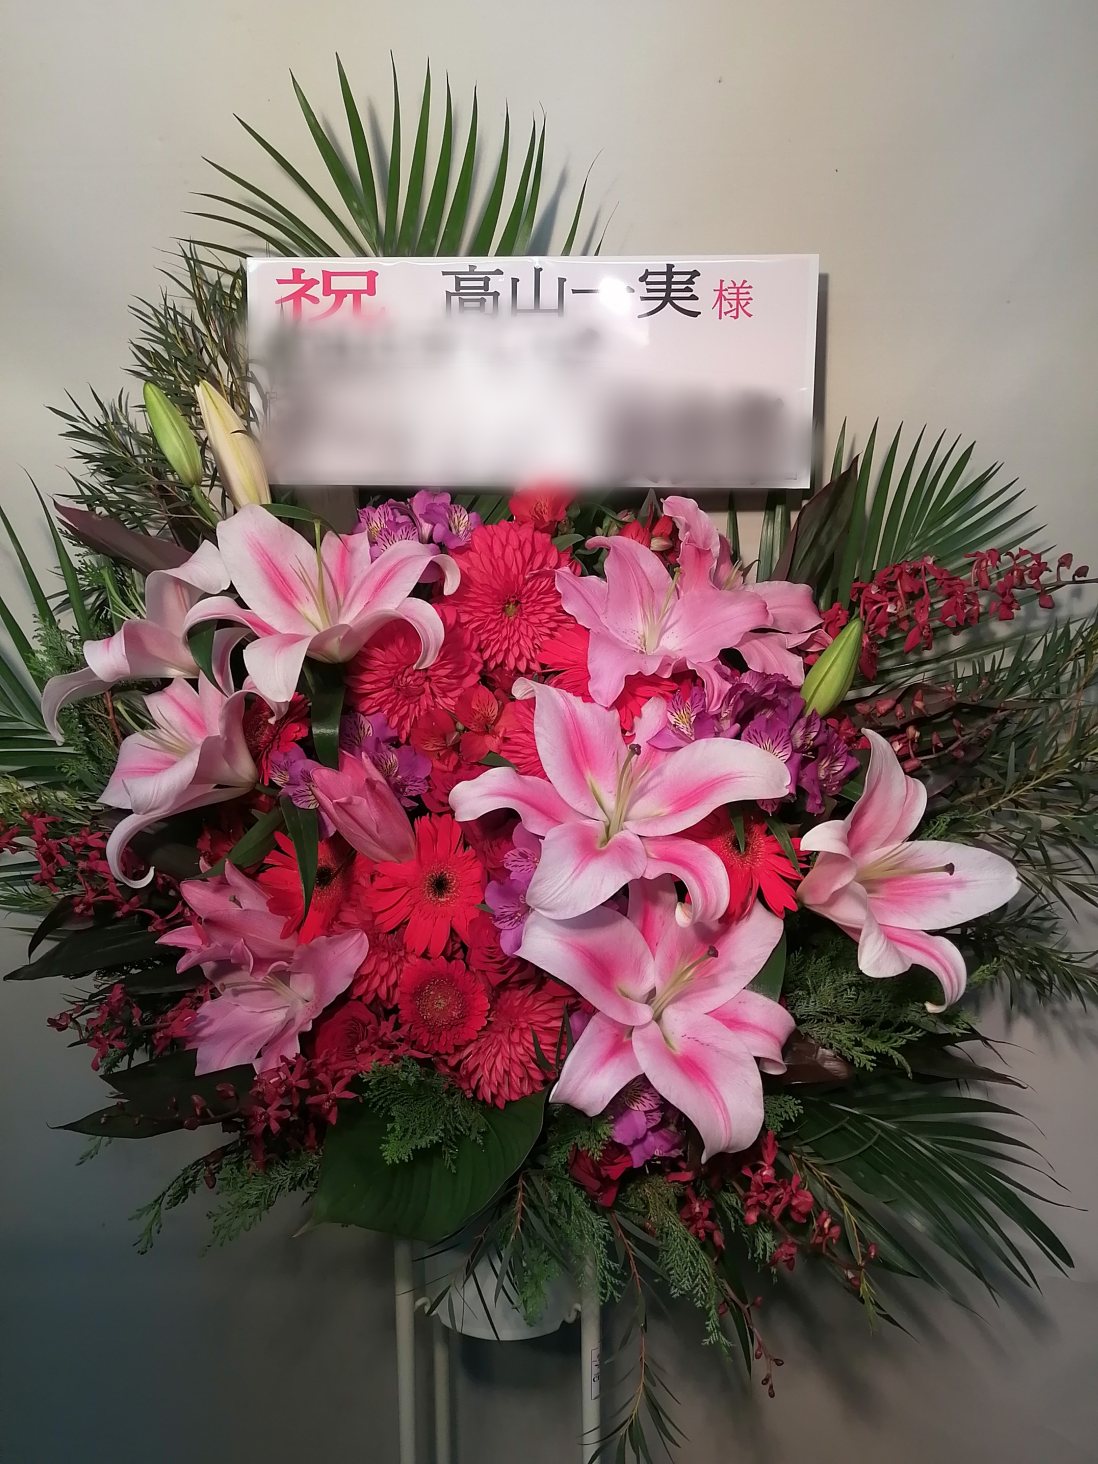 東京ドームにお届けした公演御祝いのスタンド花